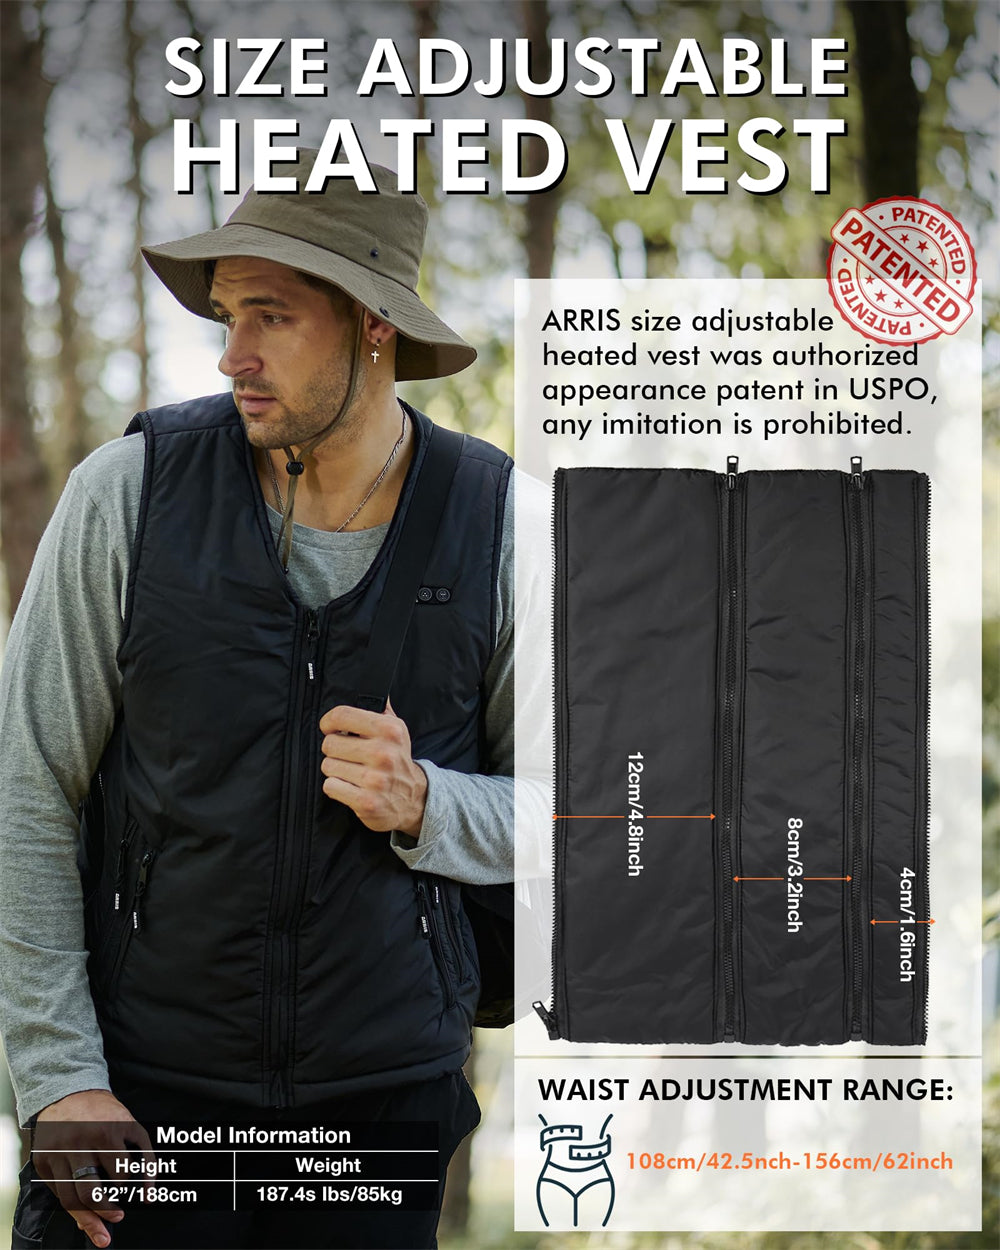 size adjustable heated vest for men